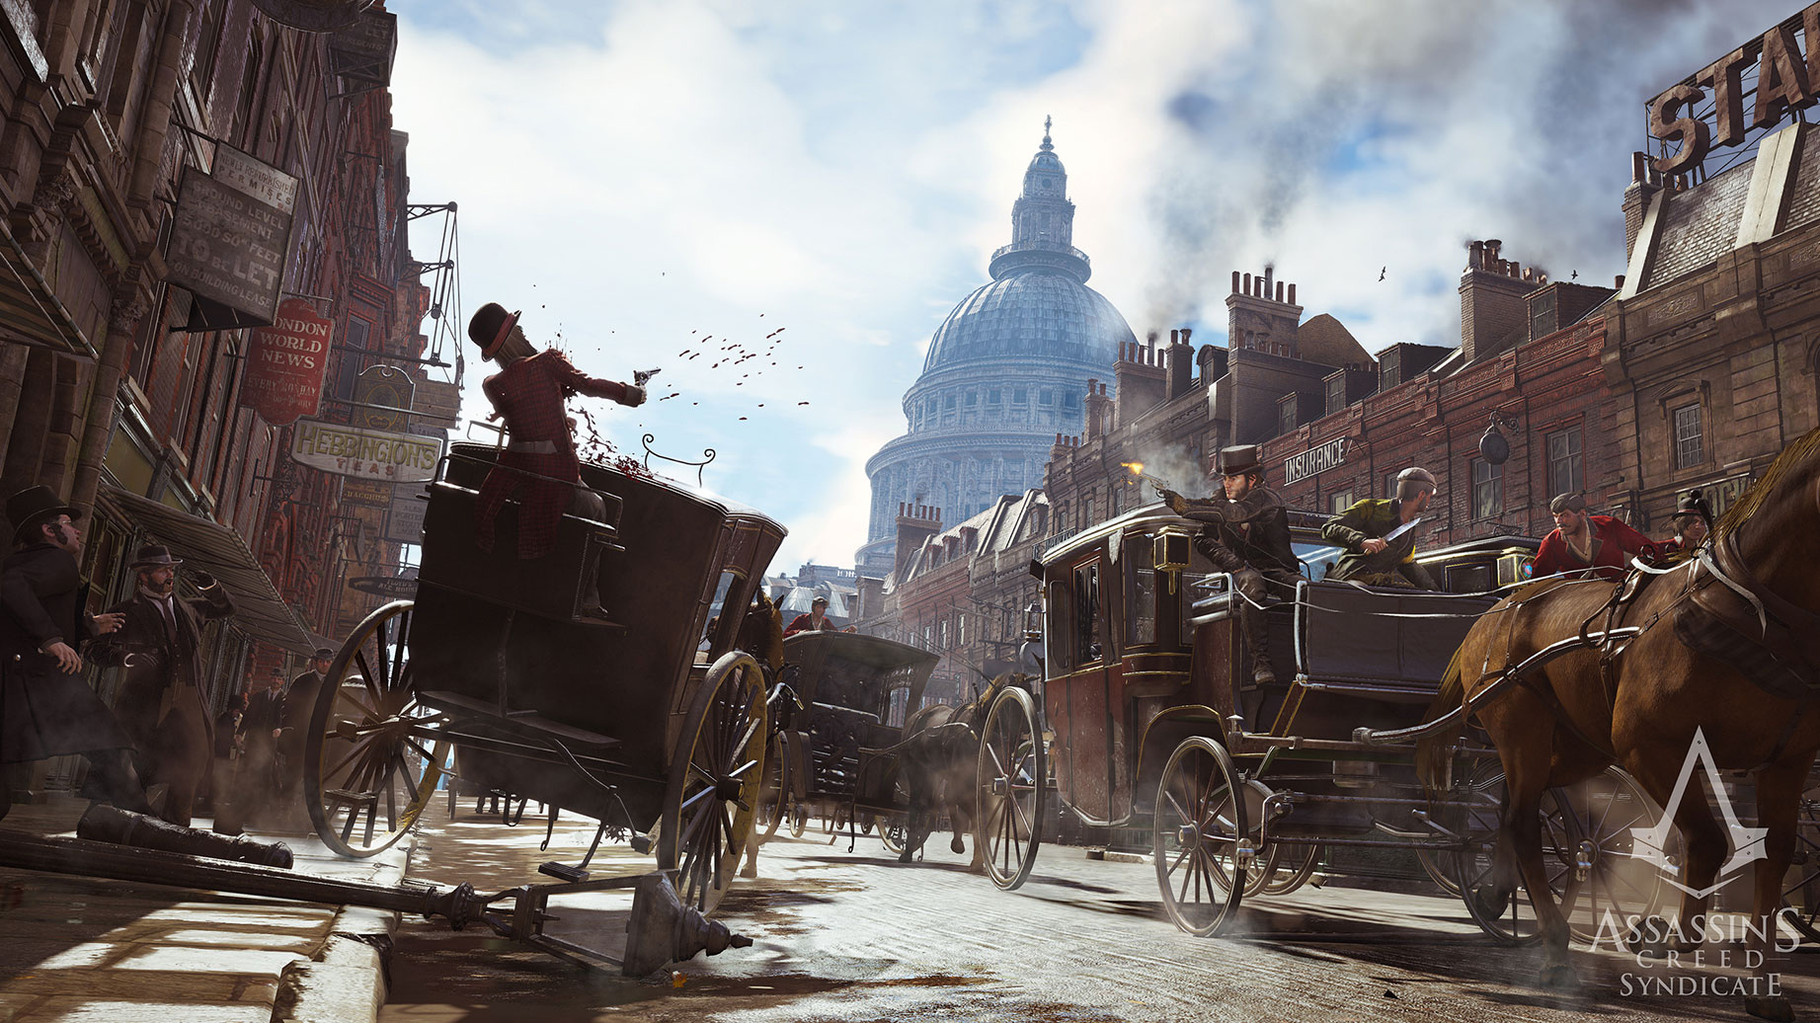 Assassin's Creed Syndicate: Die im spätviktorianischen London angesiedelte Kampagne setzt auf Dampfmaschinen, Kutschen und Assassinen, die wie Straßen-Gangs inszeniert sind. Diese Episode könnte über Wiedergeburt oder Untergang der Marke entscheiden.